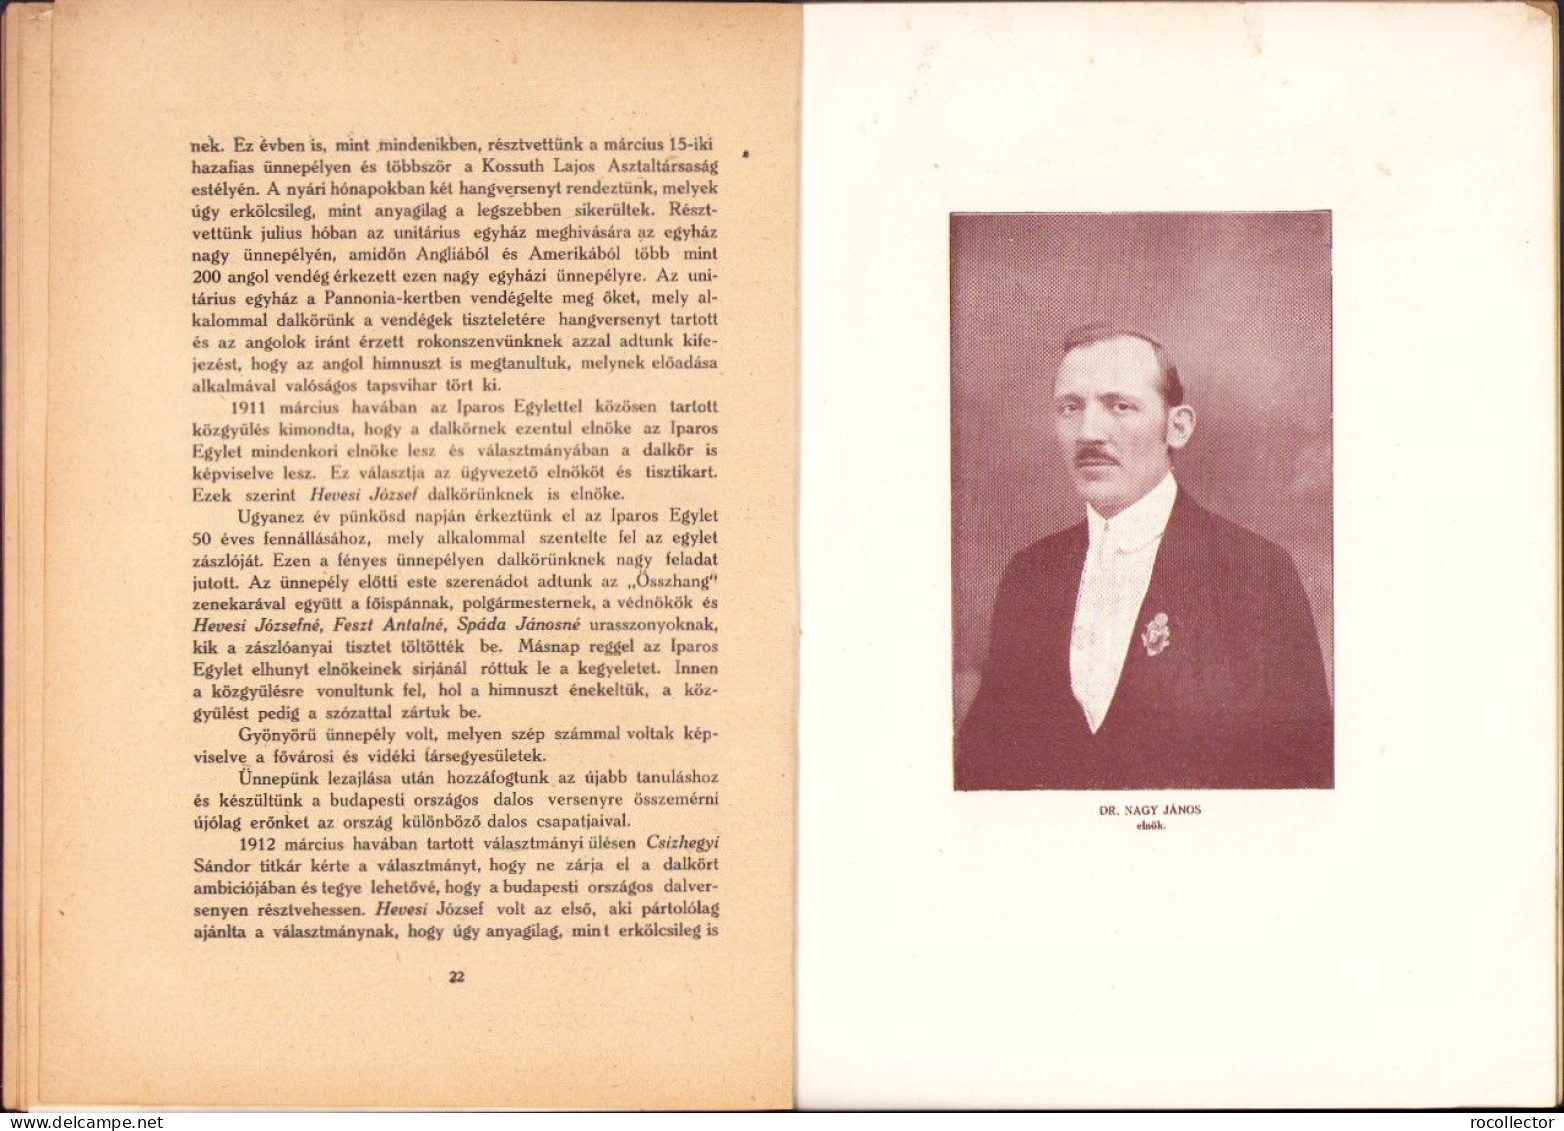 A kolozsvári Iparos Egylet Dalkőrének emlékkönyve 1872-1923 összeállitotta Csizhegyi Sándor, 1923 720SPN